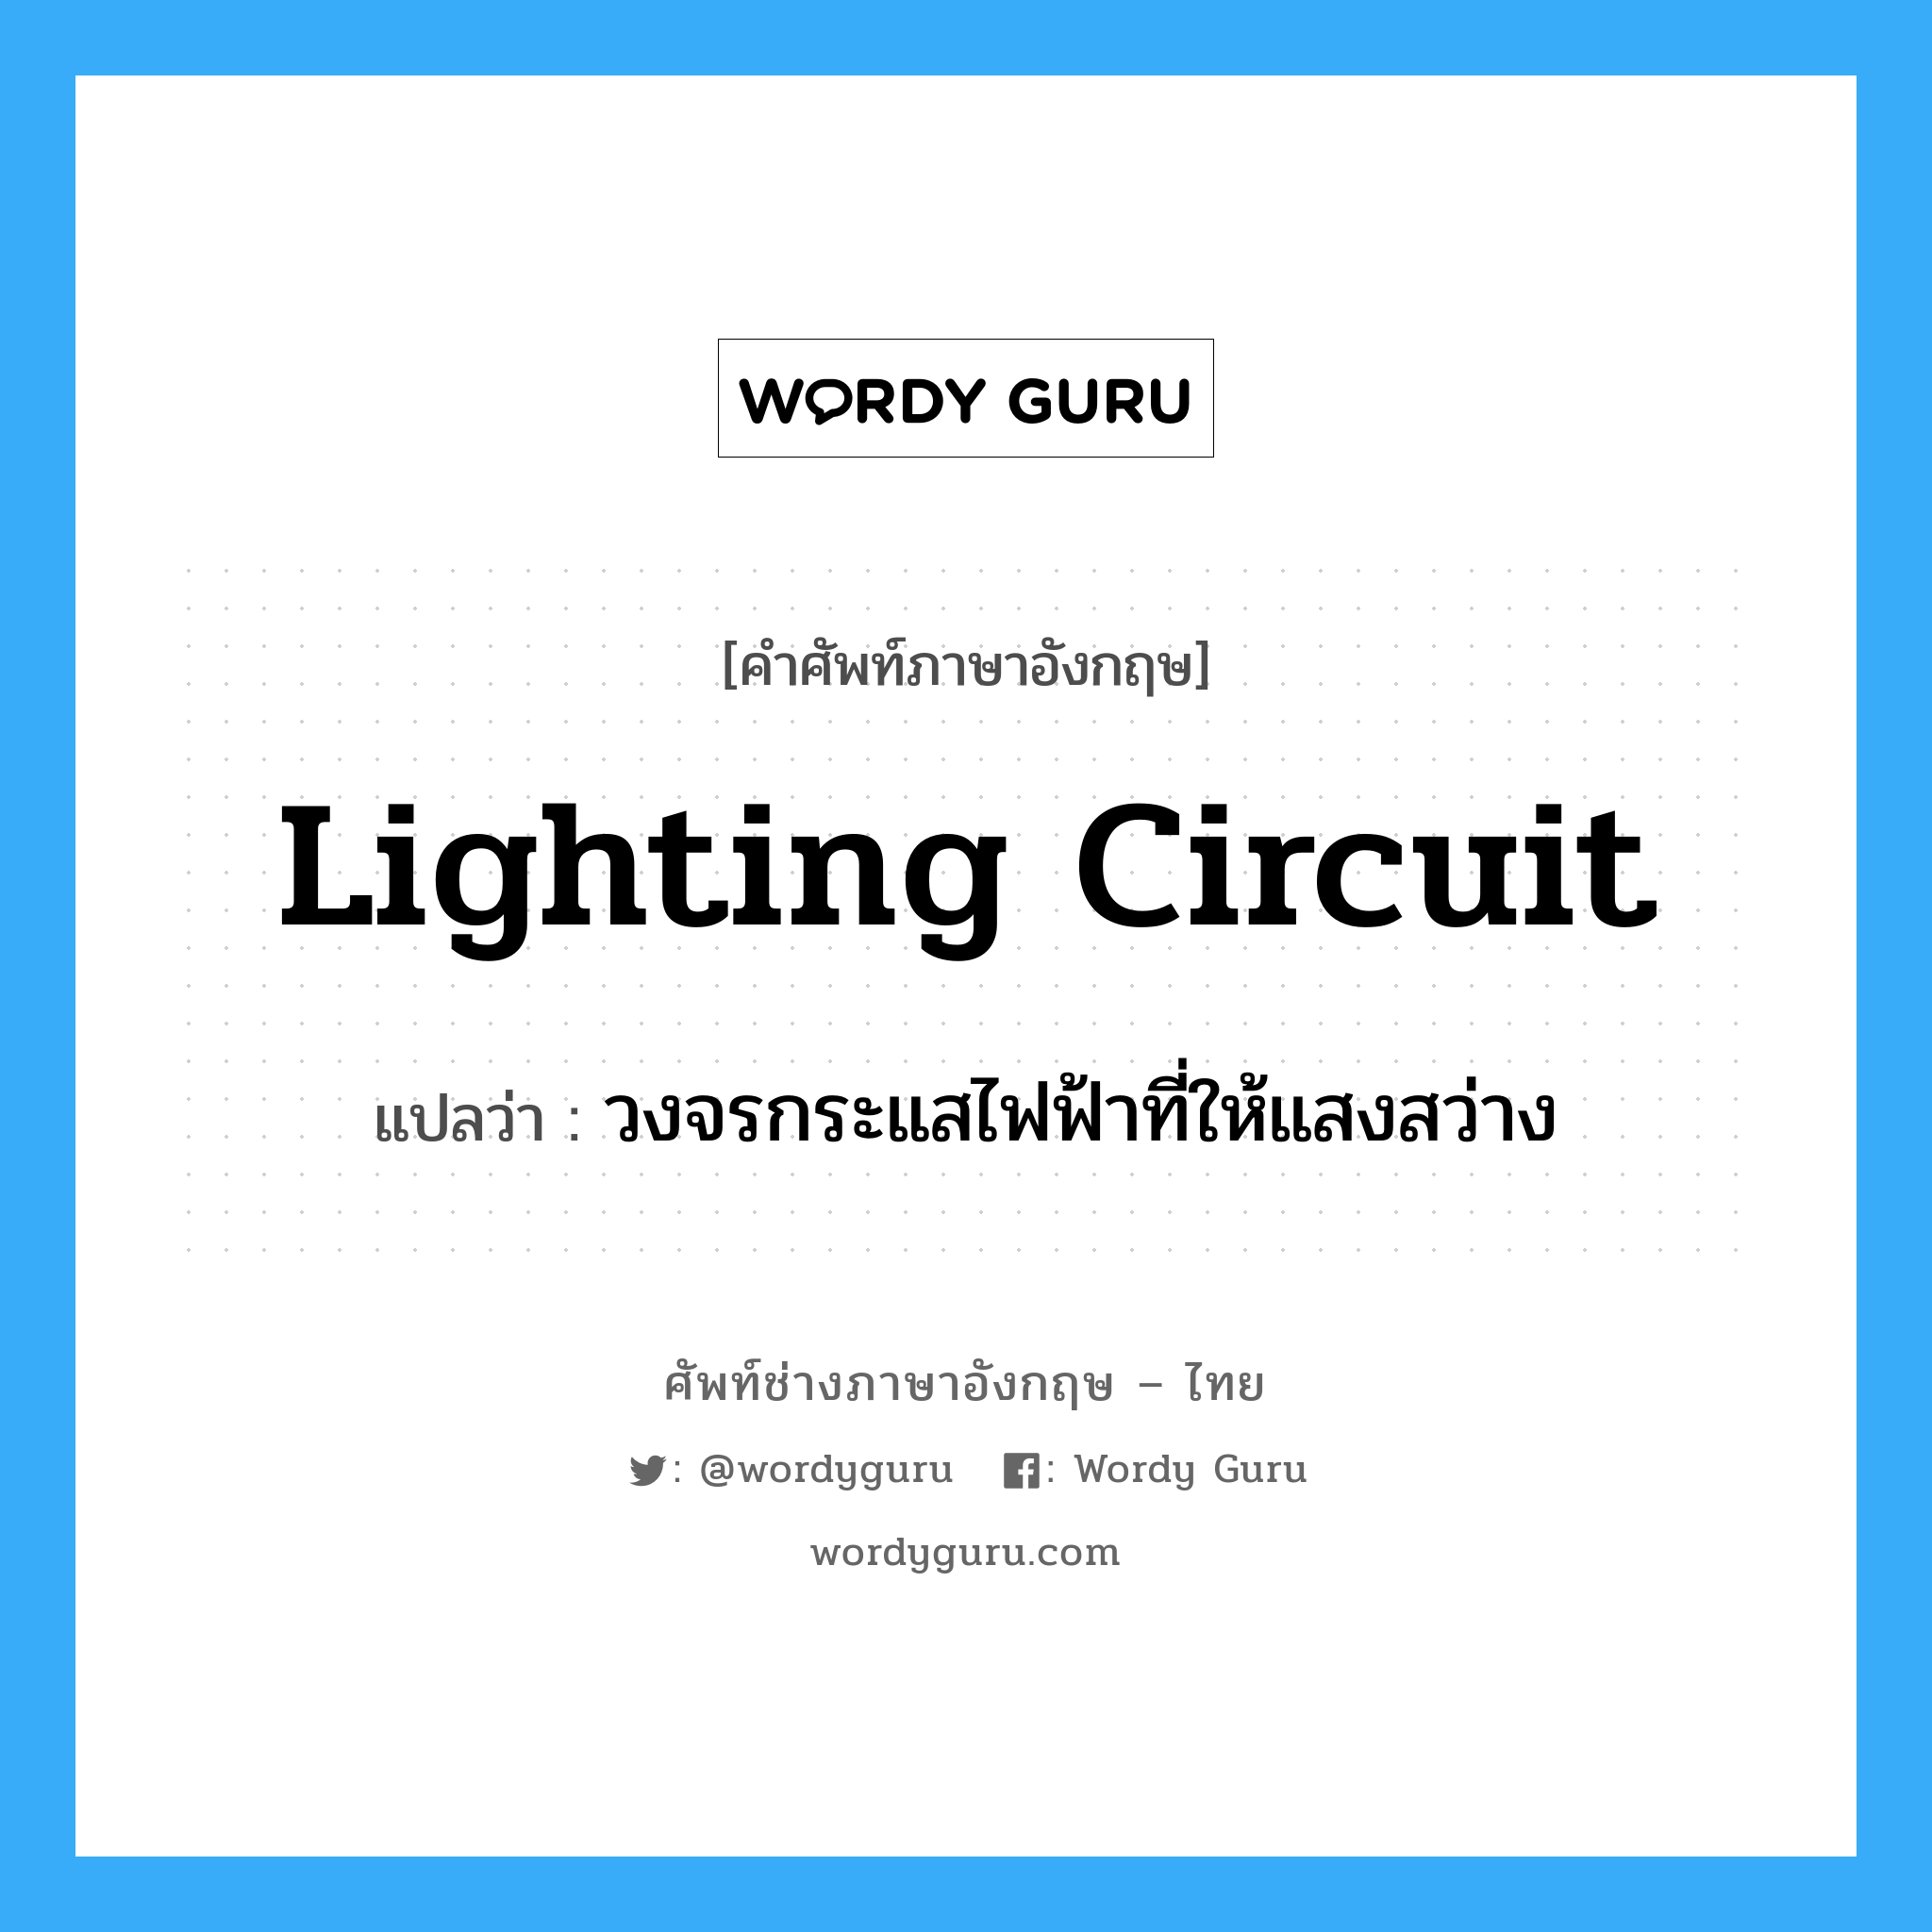 วงจรกระแสไฟฟ้าที่ให้แสงสว่าง ภาษาอังกฤษ?, คำศัพท์ช่างภาษาอังกฤษ - ไทย วงจรกระแสไฟฟ้าที่ให้แสงสว่าง คำศัพท์ภาษาอังกฤษ วงจรกระแสไฟฟ้าที่ให้แสงสว่าง แปลว่า lighting circuit